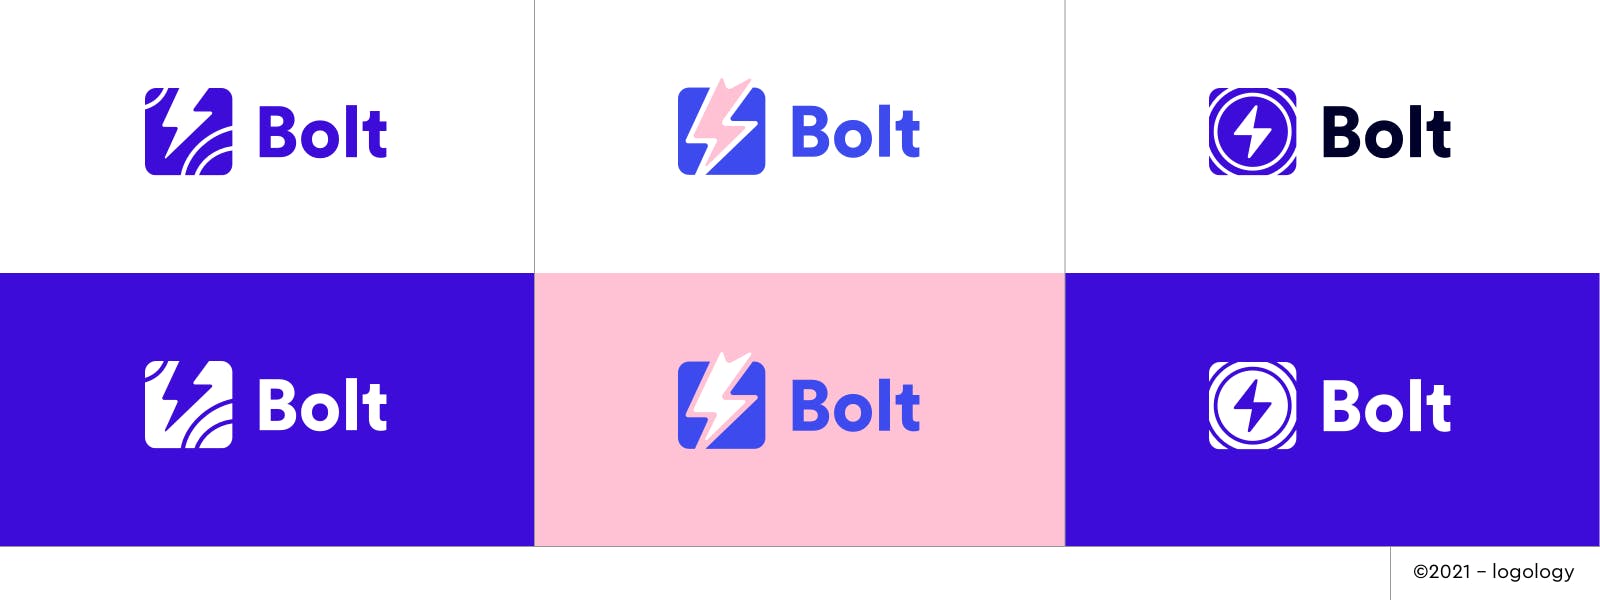 bolt logo proposals recap